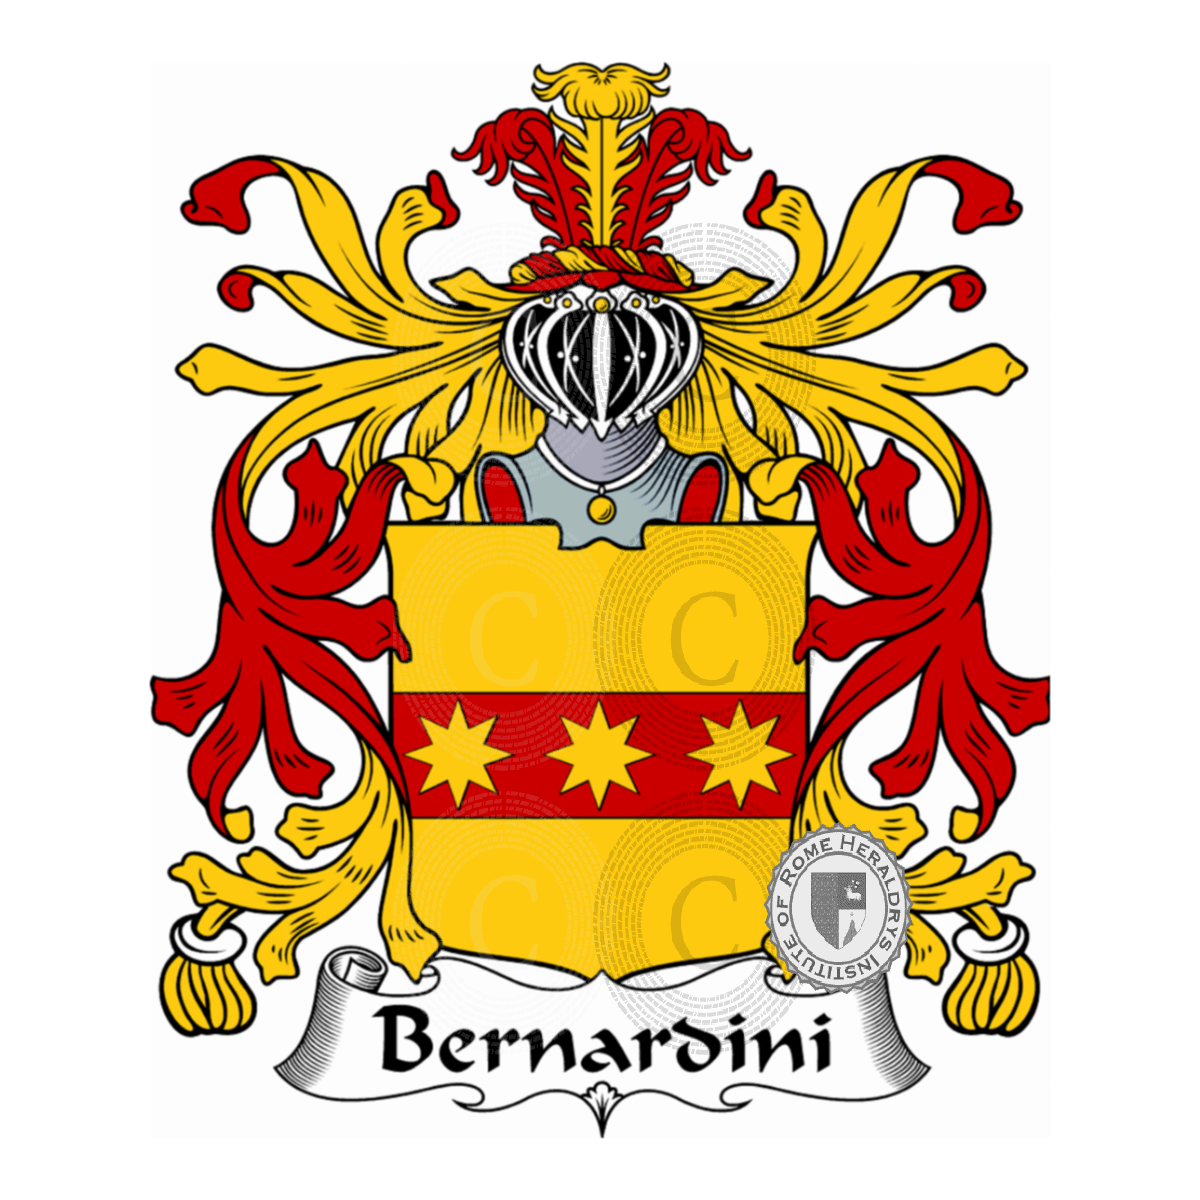 Stemma della famigliaBernardini, Bernardini del Guanto,Bernardini dell'Alietta